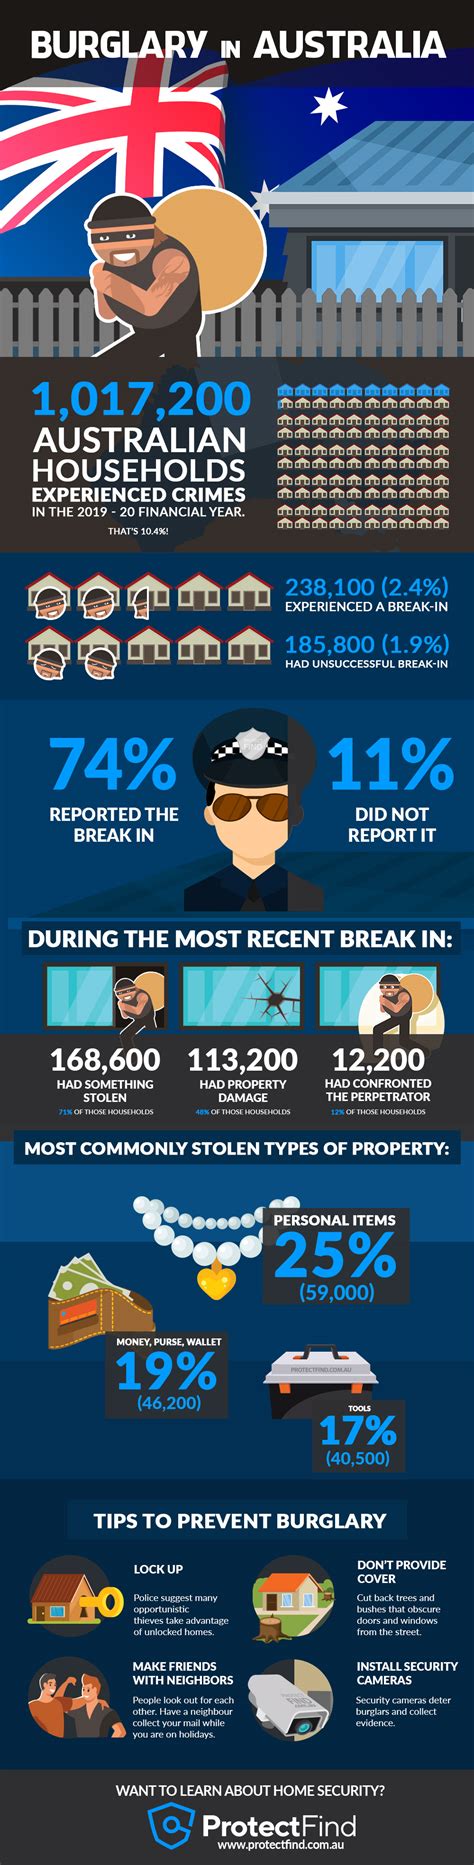 11 Surprising Home Burglary Statistics In Australia